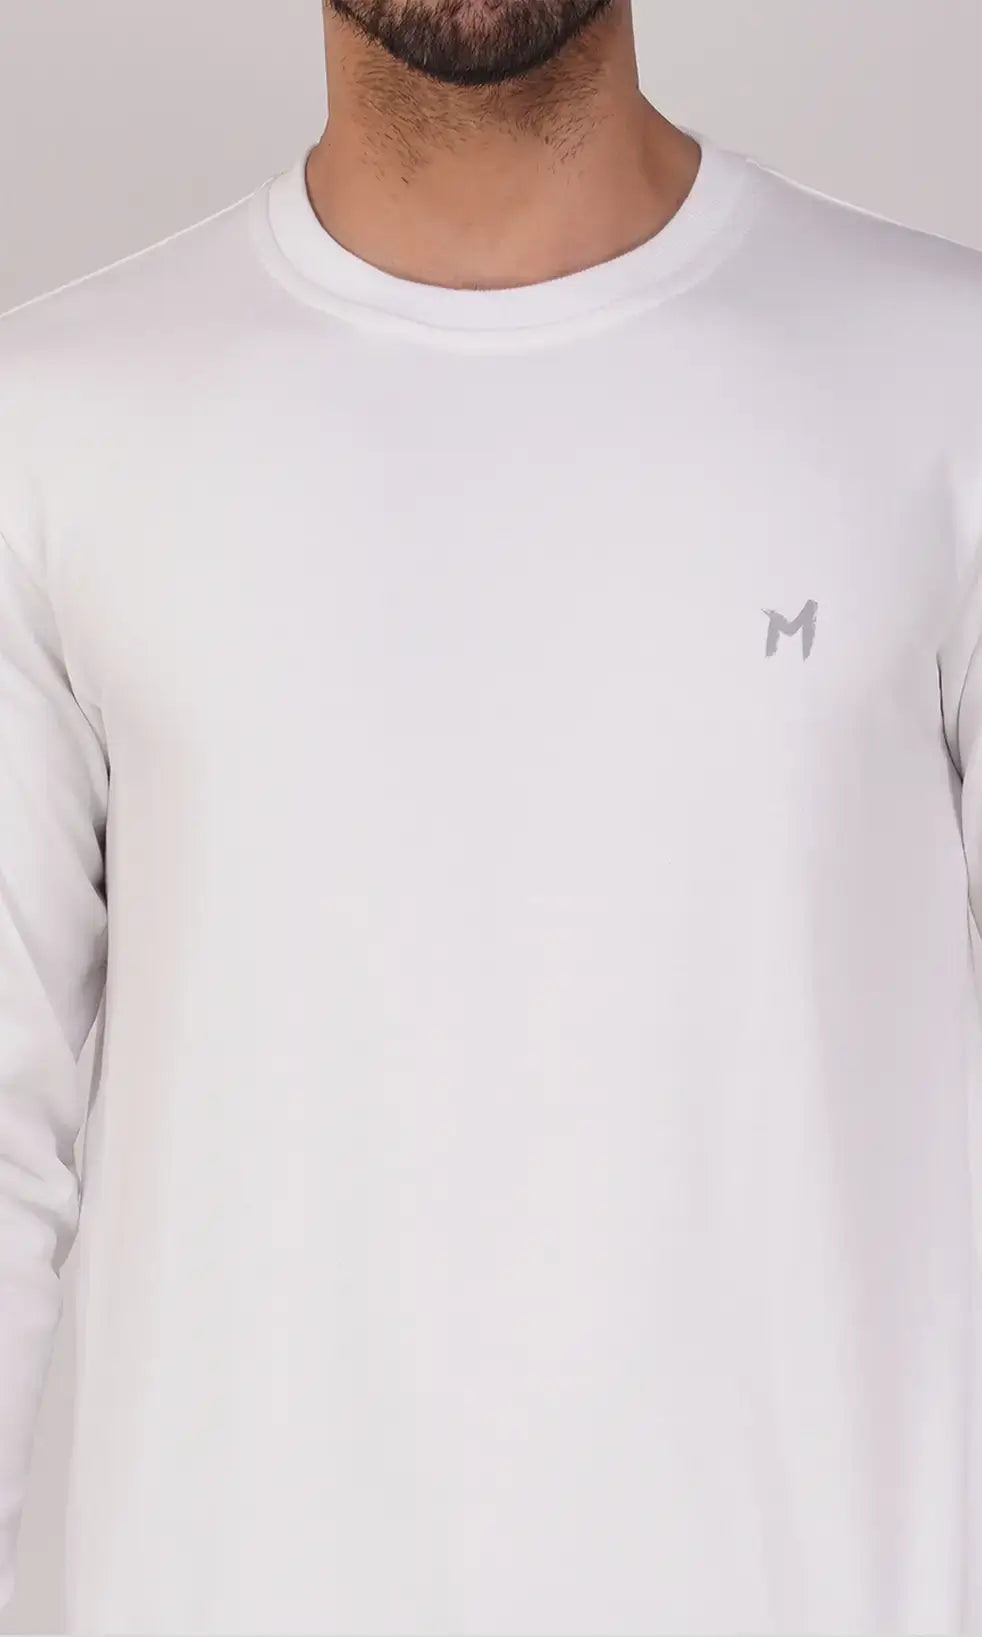 Mebadass Cotton Men's Winterwear Sweatshirt - White